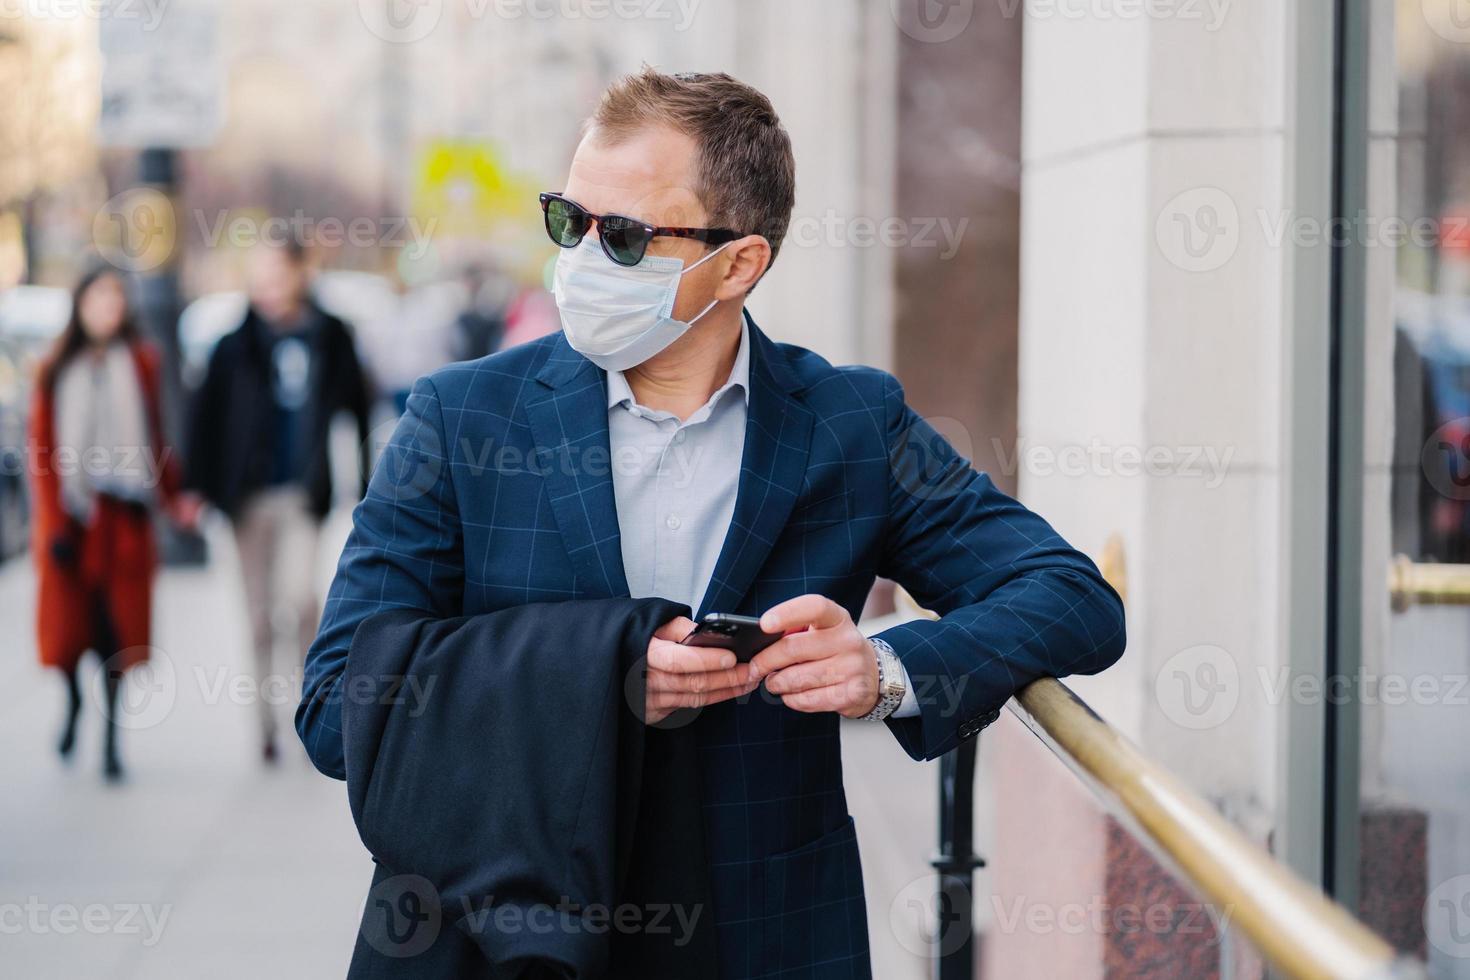 välmående affärsman i högtidlig klädsel poserar på gatan, väntar på någon, håller mobiltelefon och skickar textmeddelanden, bär medicinsk mask under coronavirusutbrott, få människor går utanför foto